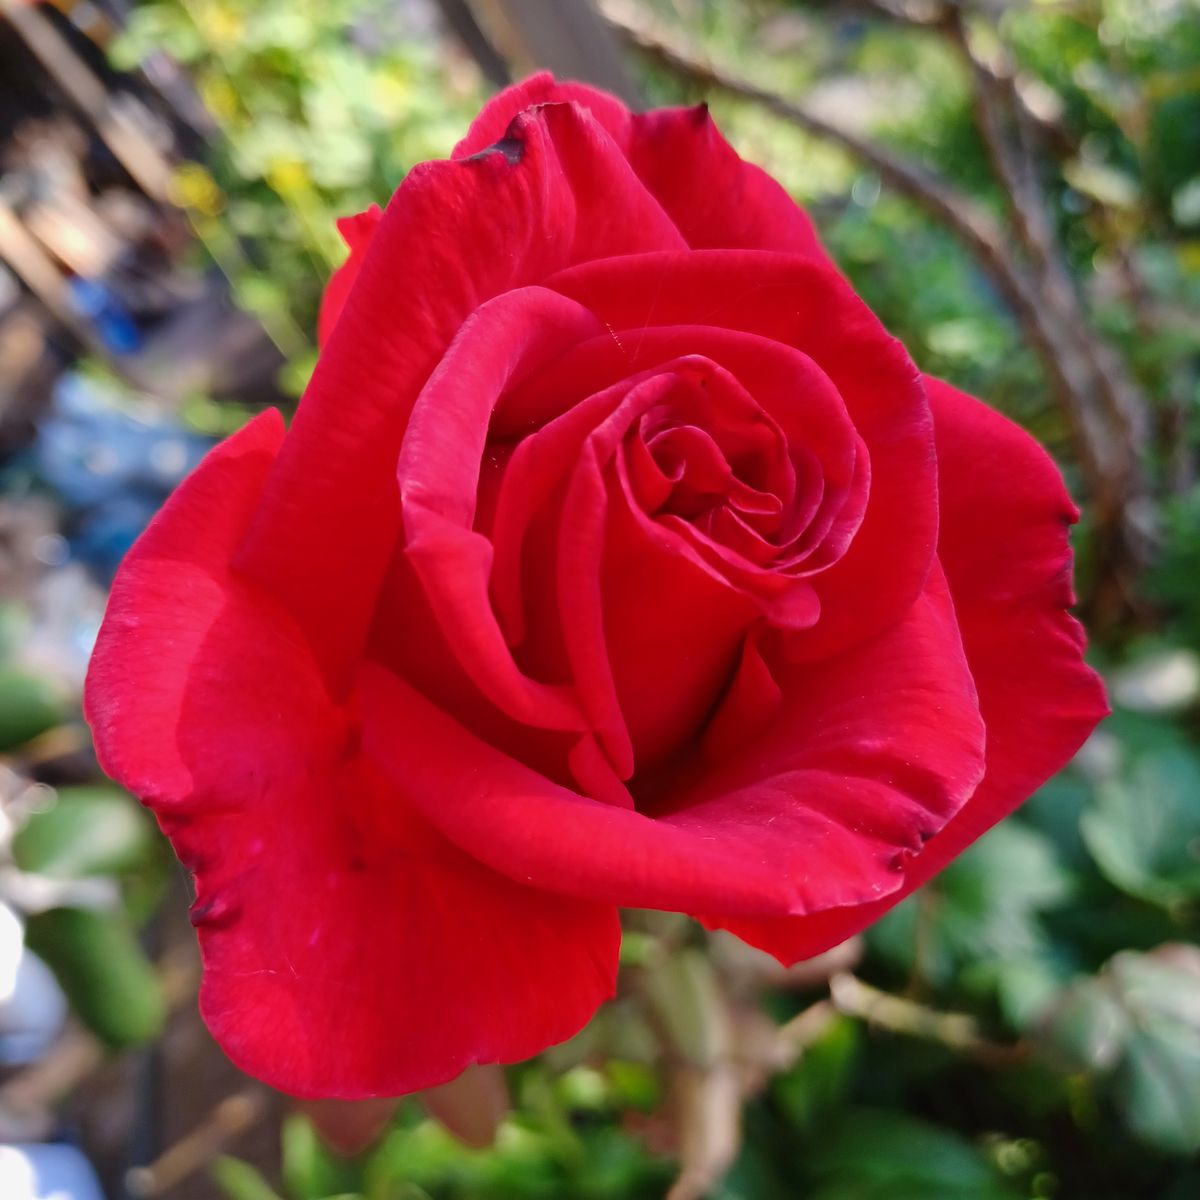 名前の分からない真っ赤な薔薇🌹、姿はうちの薔薇の中でもこれぞ”薔薇”って感じかな？ 